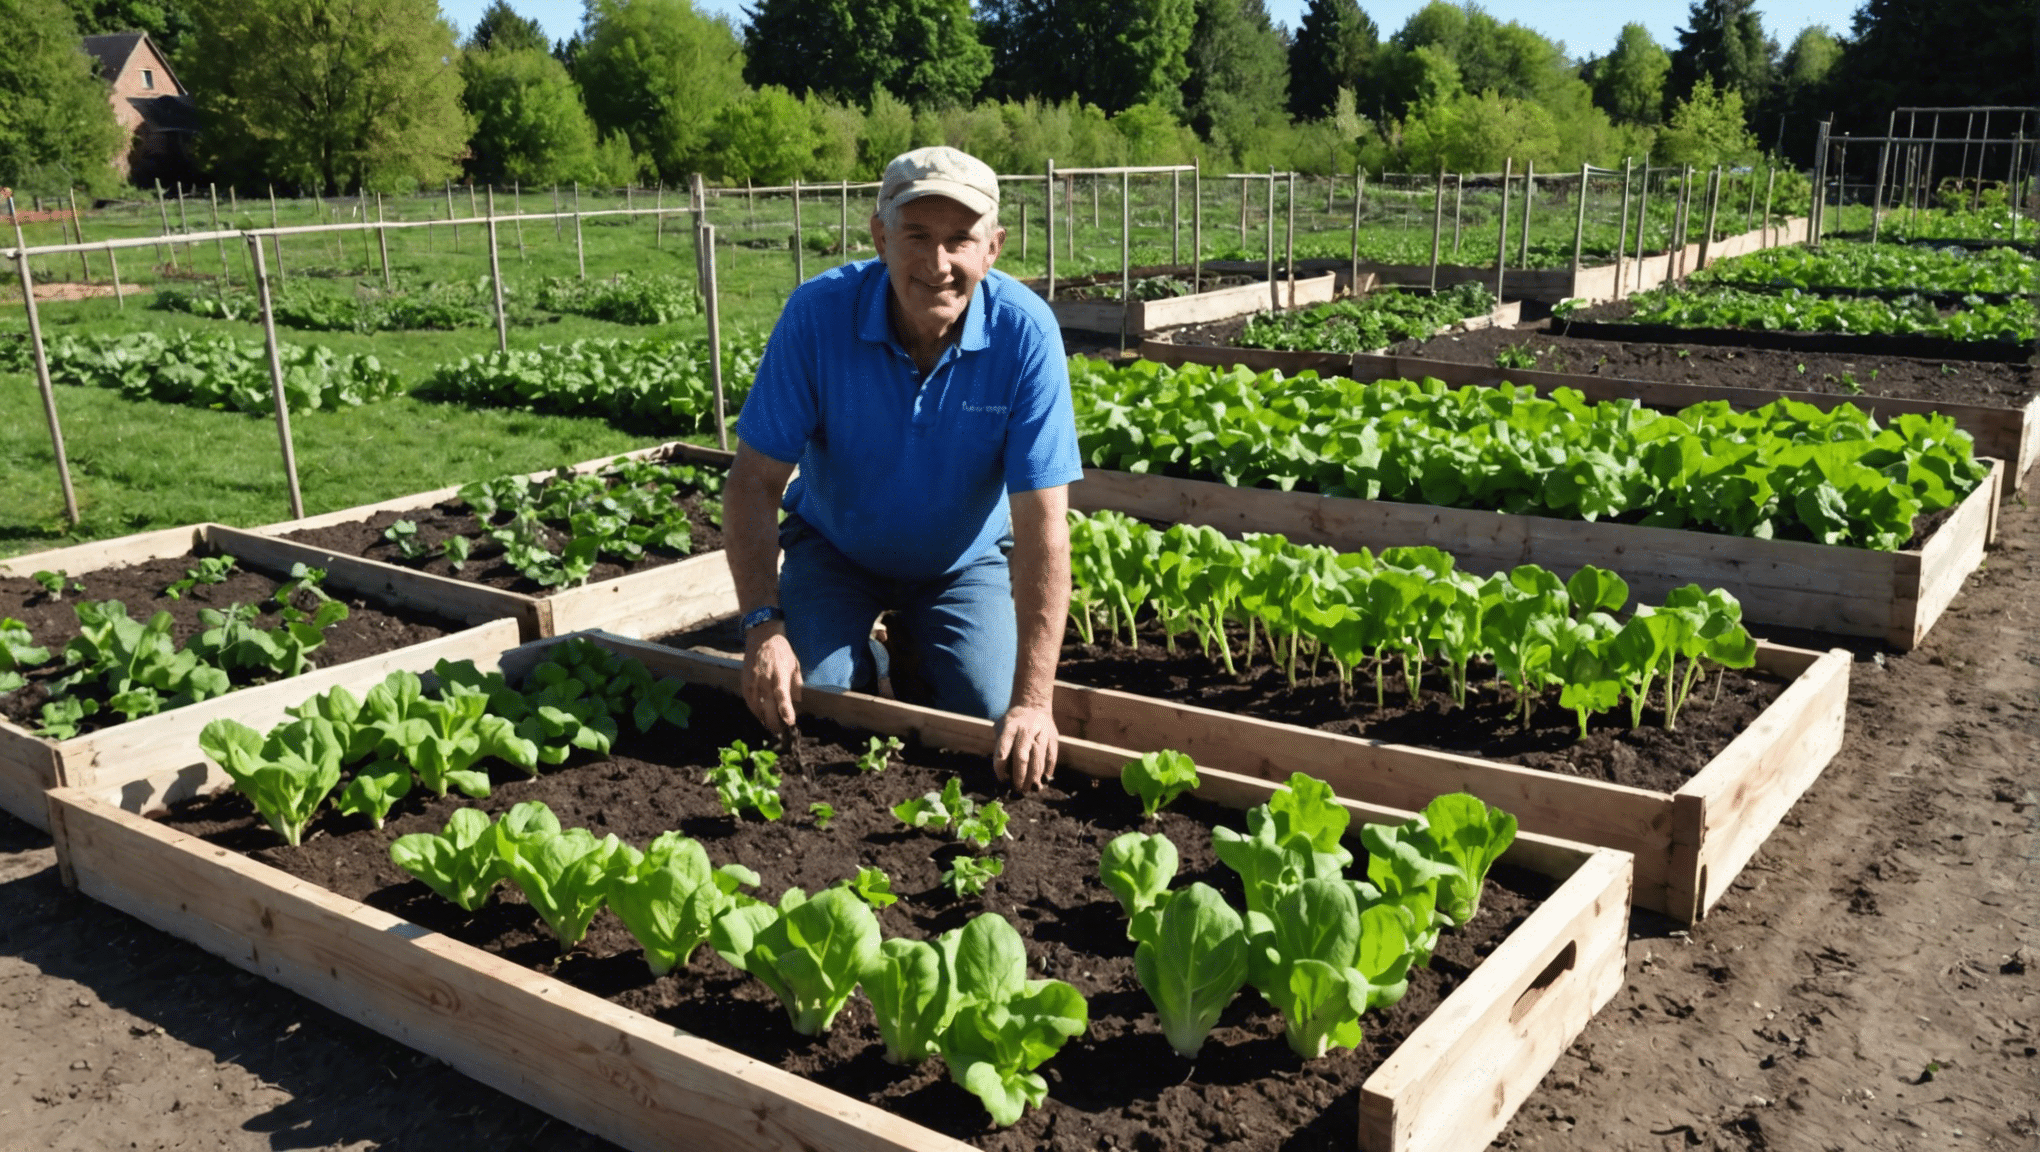 odkryj podstawowe zadania, które należy wykonać w ogrodzie warzywnym na początku kwietnia, aby zapewnić dobre zbiory. porady i wskazówki, jak dobrze rozpocząć sezon ogrodniczy.